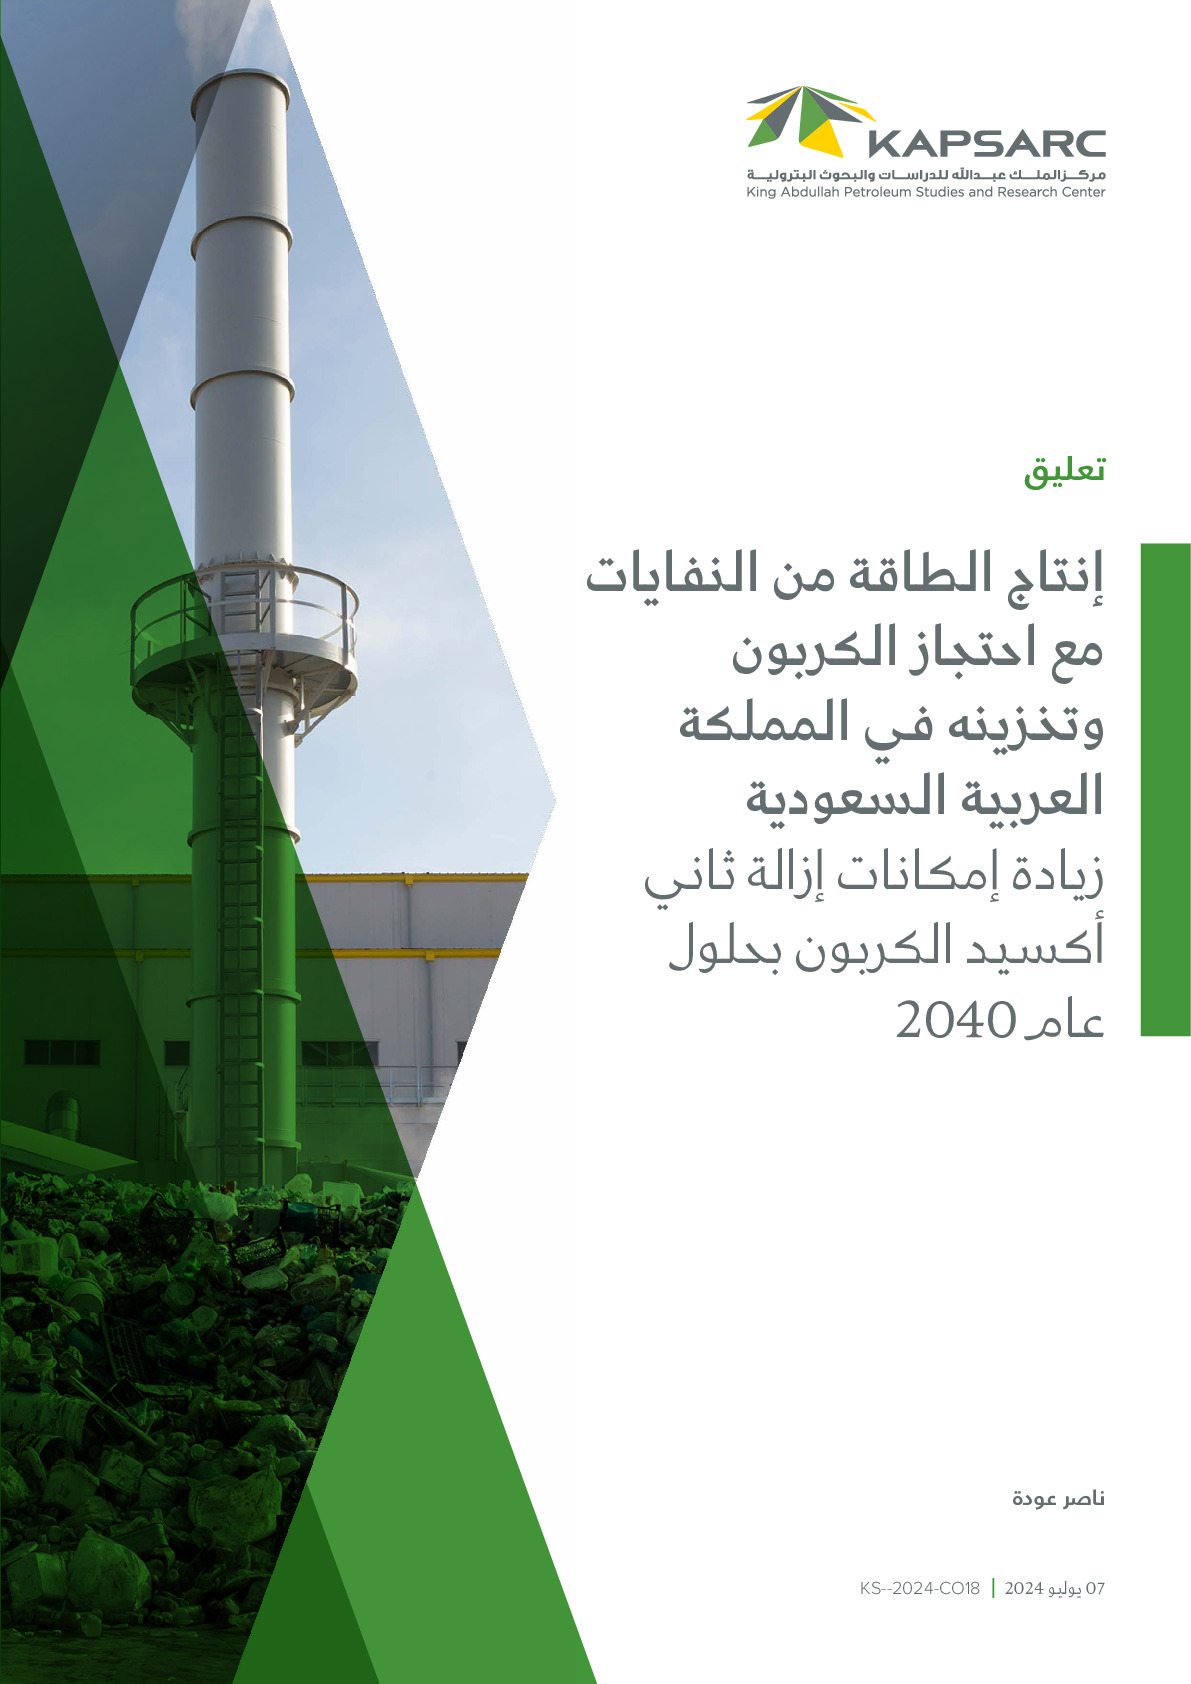 إنتاج الطاقة من النفايات مع احتجاز الكربون وتخزينه في المملكة العربية السعودية: زيادة إمكانات إزالة ثاني أكسيد الكربون بحلول عام 2040